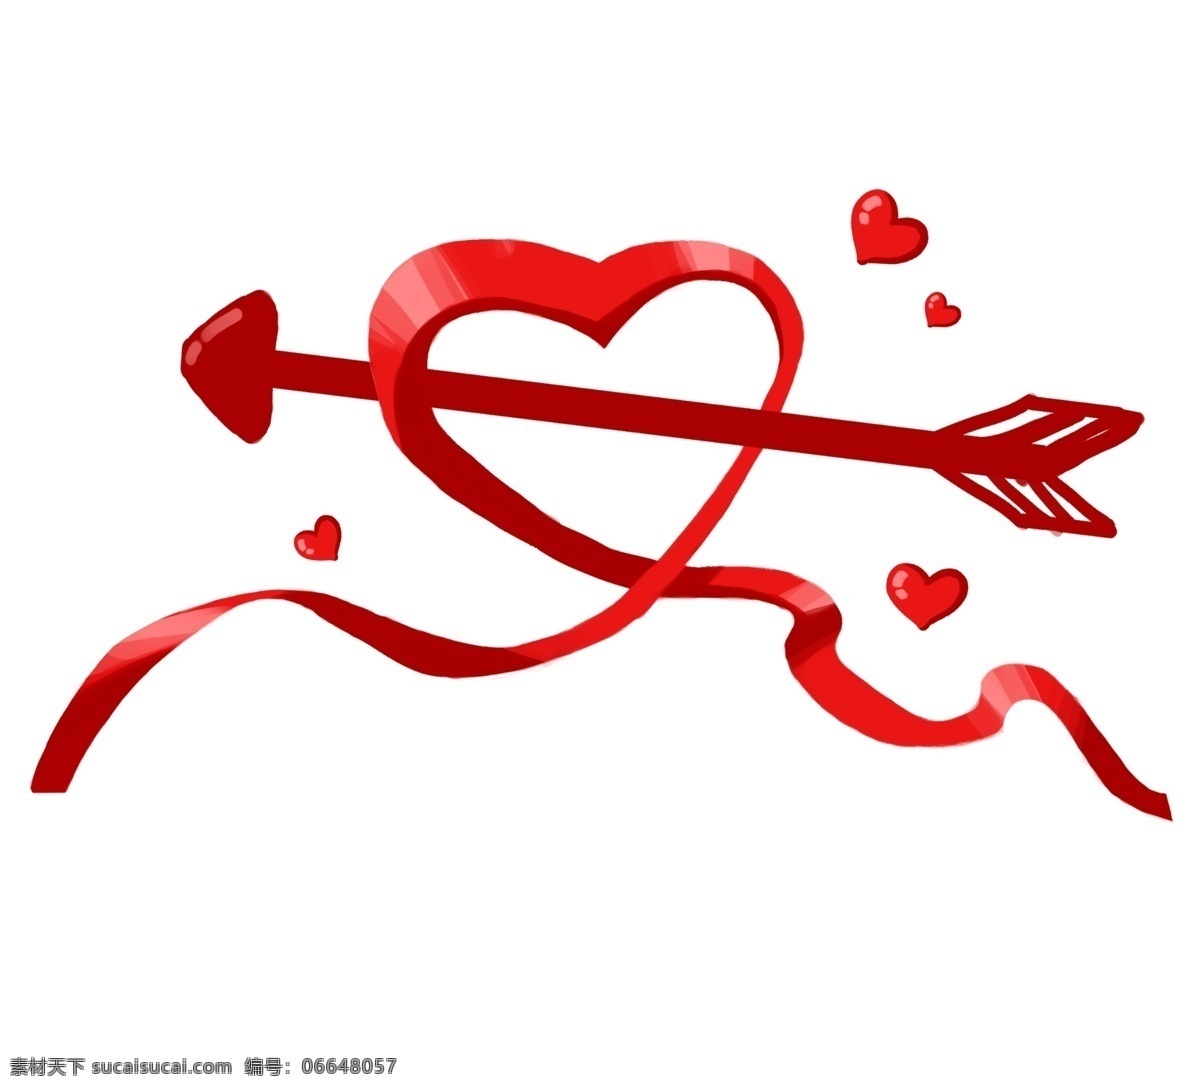 一箭 穿 心 卡通 插画 一箭穿心 红色的爱心 红色的箭头 桃心 爱心插画 红色爱心 桃心插画 红色丝带